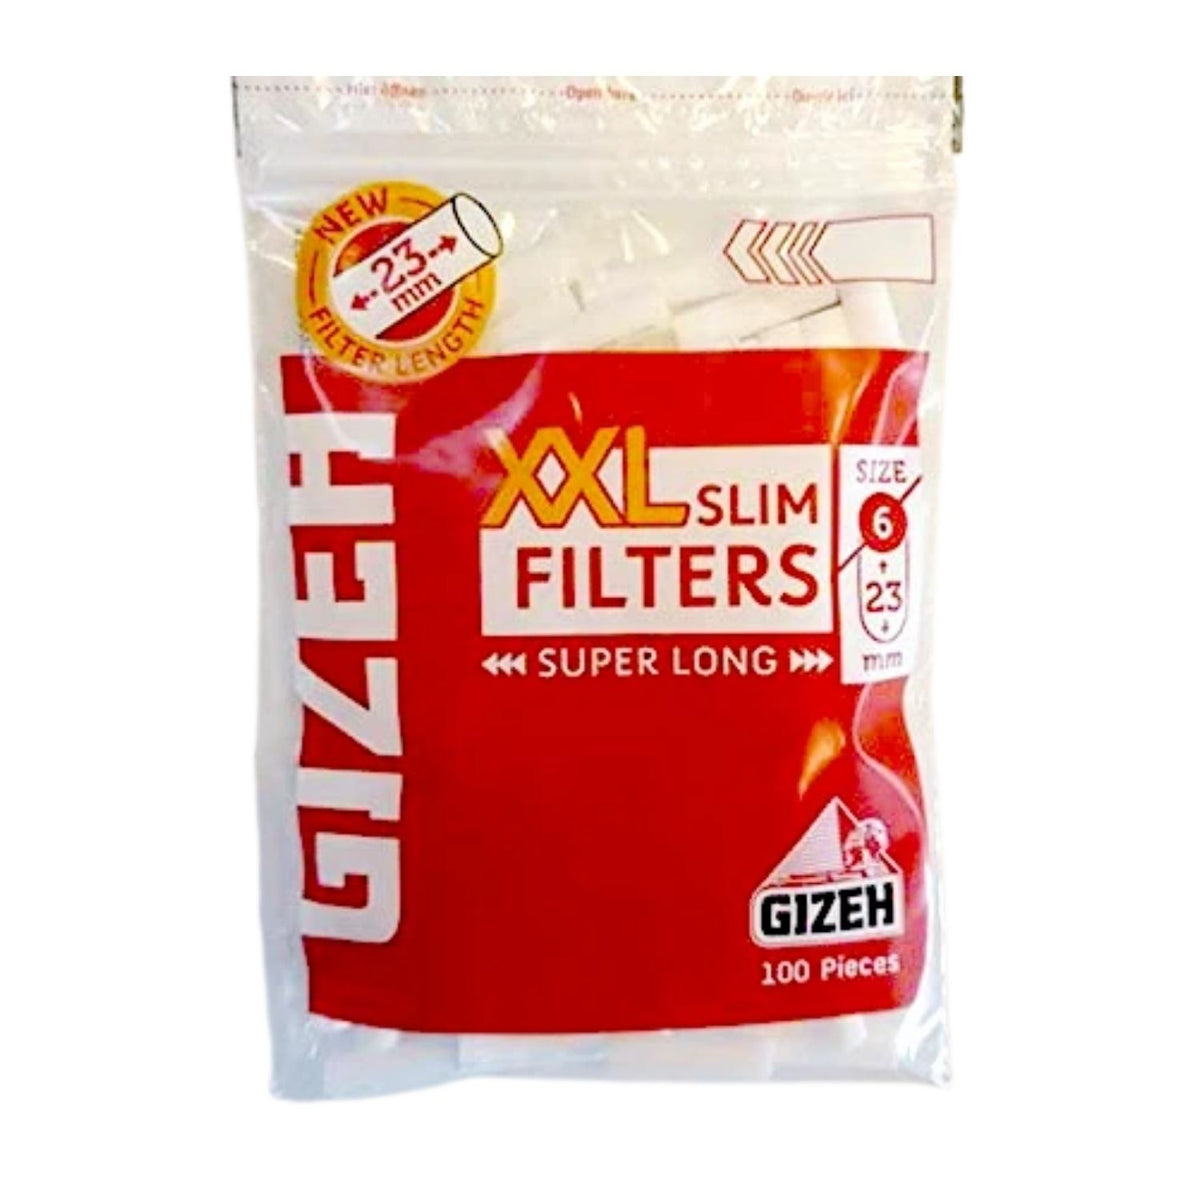 Gizeh Slim Filter Menthol 6MM